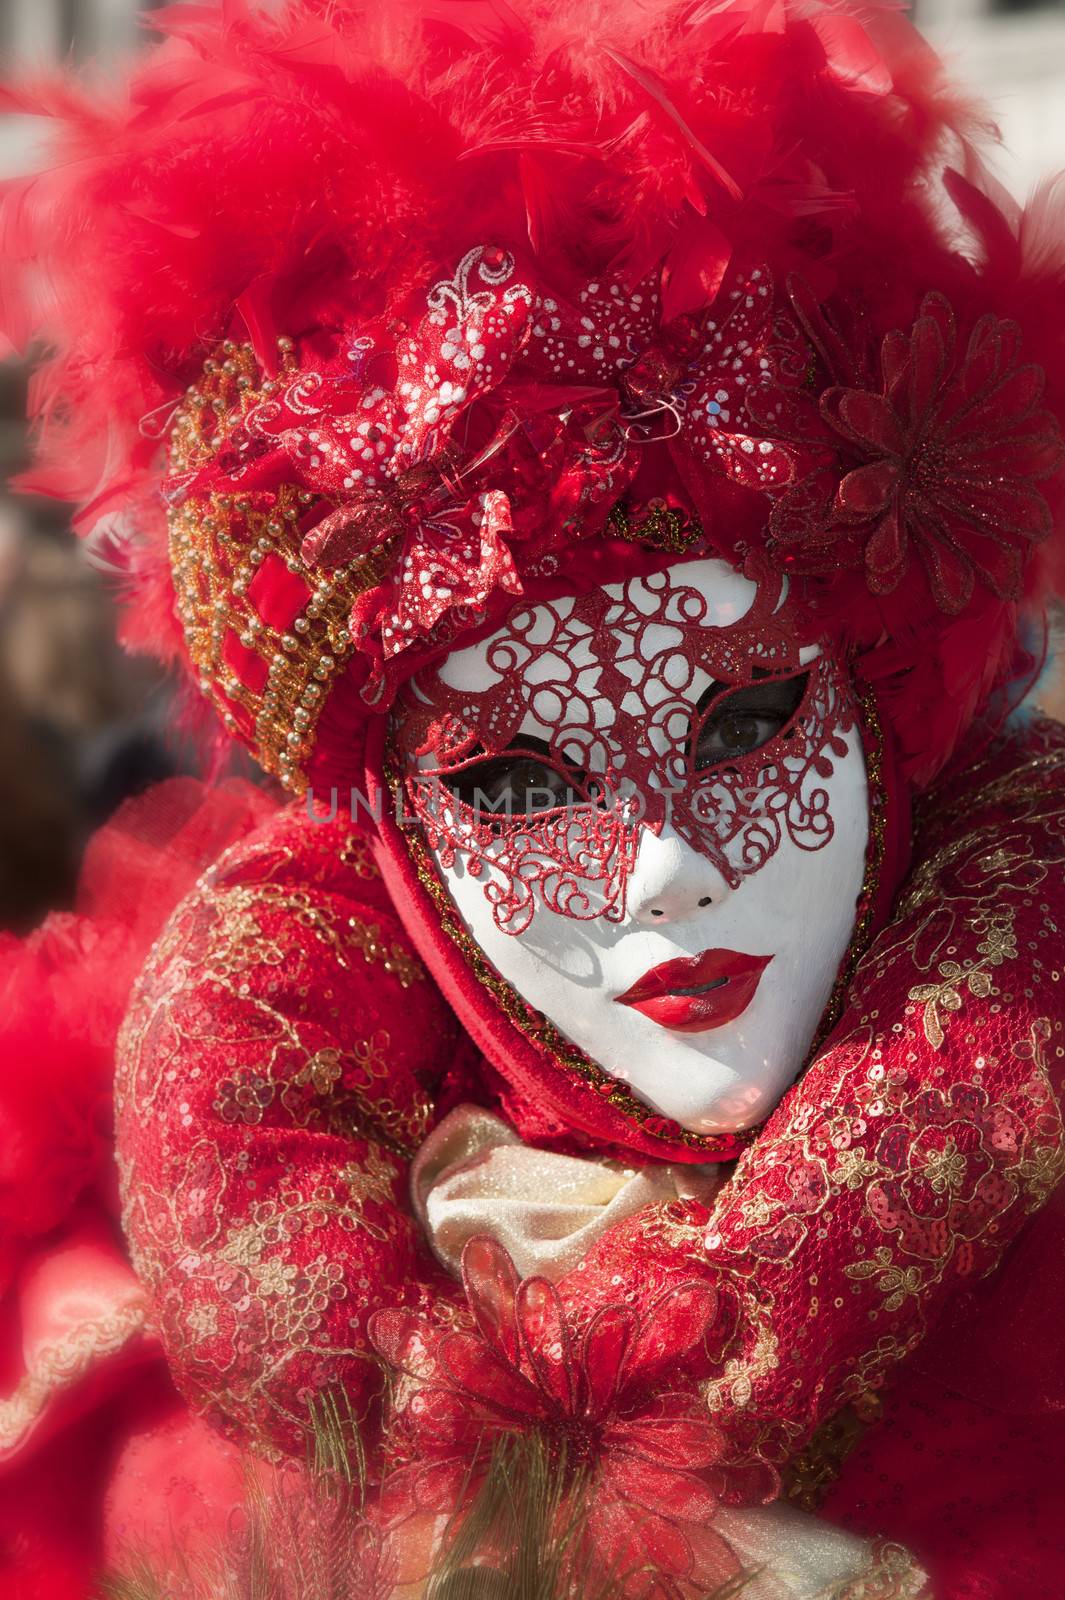 Venice carnival mask by cla78